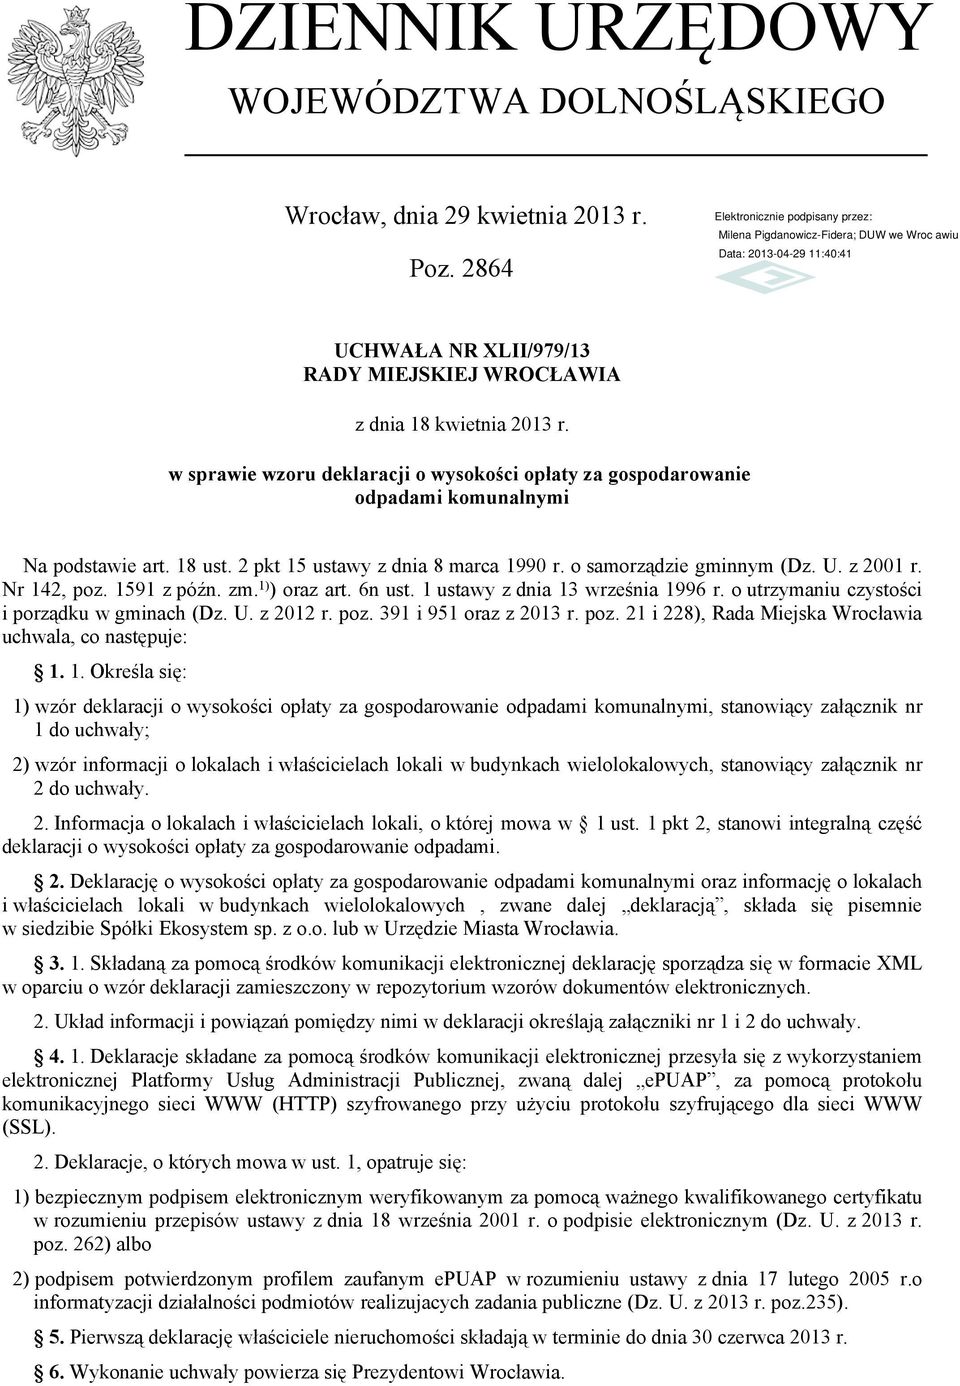 Nr 142 poz. 1591 z późn. zm. 1) ) oraz art. 6n ust. 1 ustawy z dnia 13 września 1996 r. o utrzymaniu czystości i porządku w gminach (Dz. U. z 2012 r. poz. 391 i 951 oraz z 2013 r. poz. 21 i 228) Rada Miejska Wrocławia uchwala co następuje: 1.